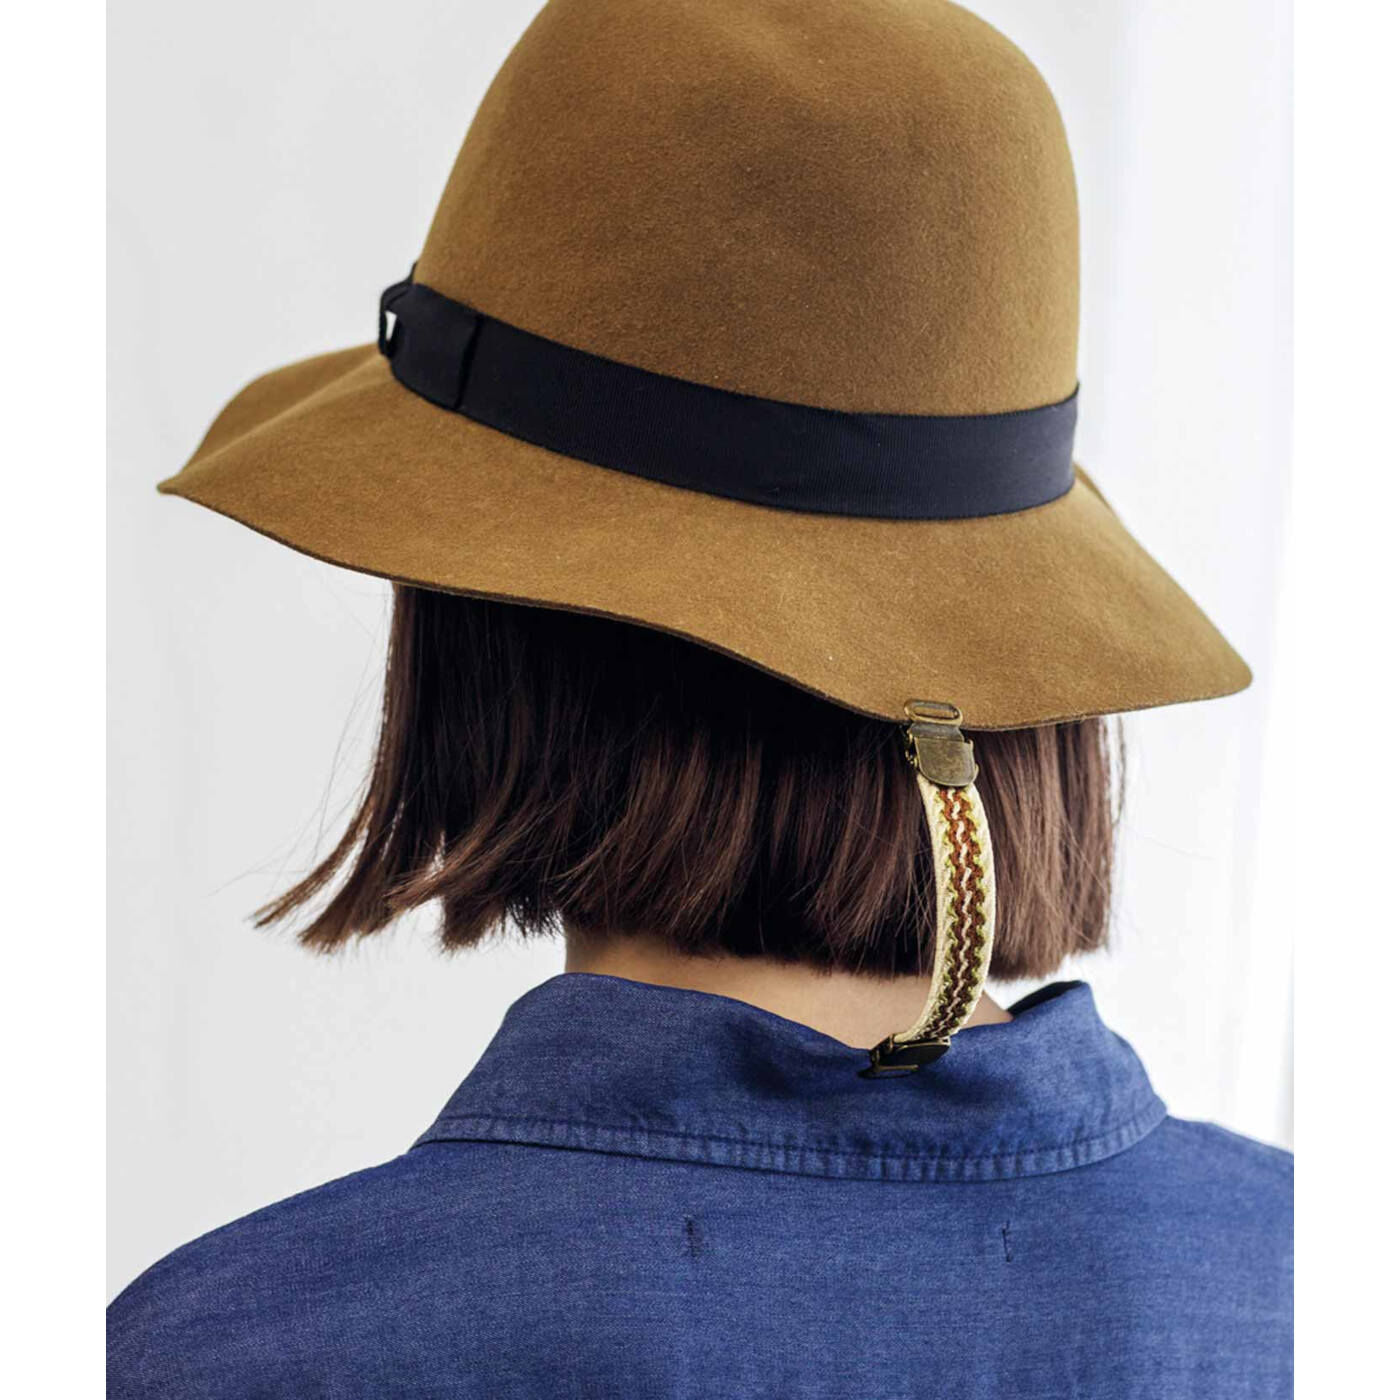 フェリシモの雑貨Kraso|UP.de　ほっそりラインが手に入る きれいめさんのシェイプホルダーの会|帽子と服を留めておけば、風で帽子が飛んでも安心。アクセサリー感覚で使ってみて。　※写真は「ほっそりラインが手に入る カジュアルさんのシェイプホルダーの会」です。